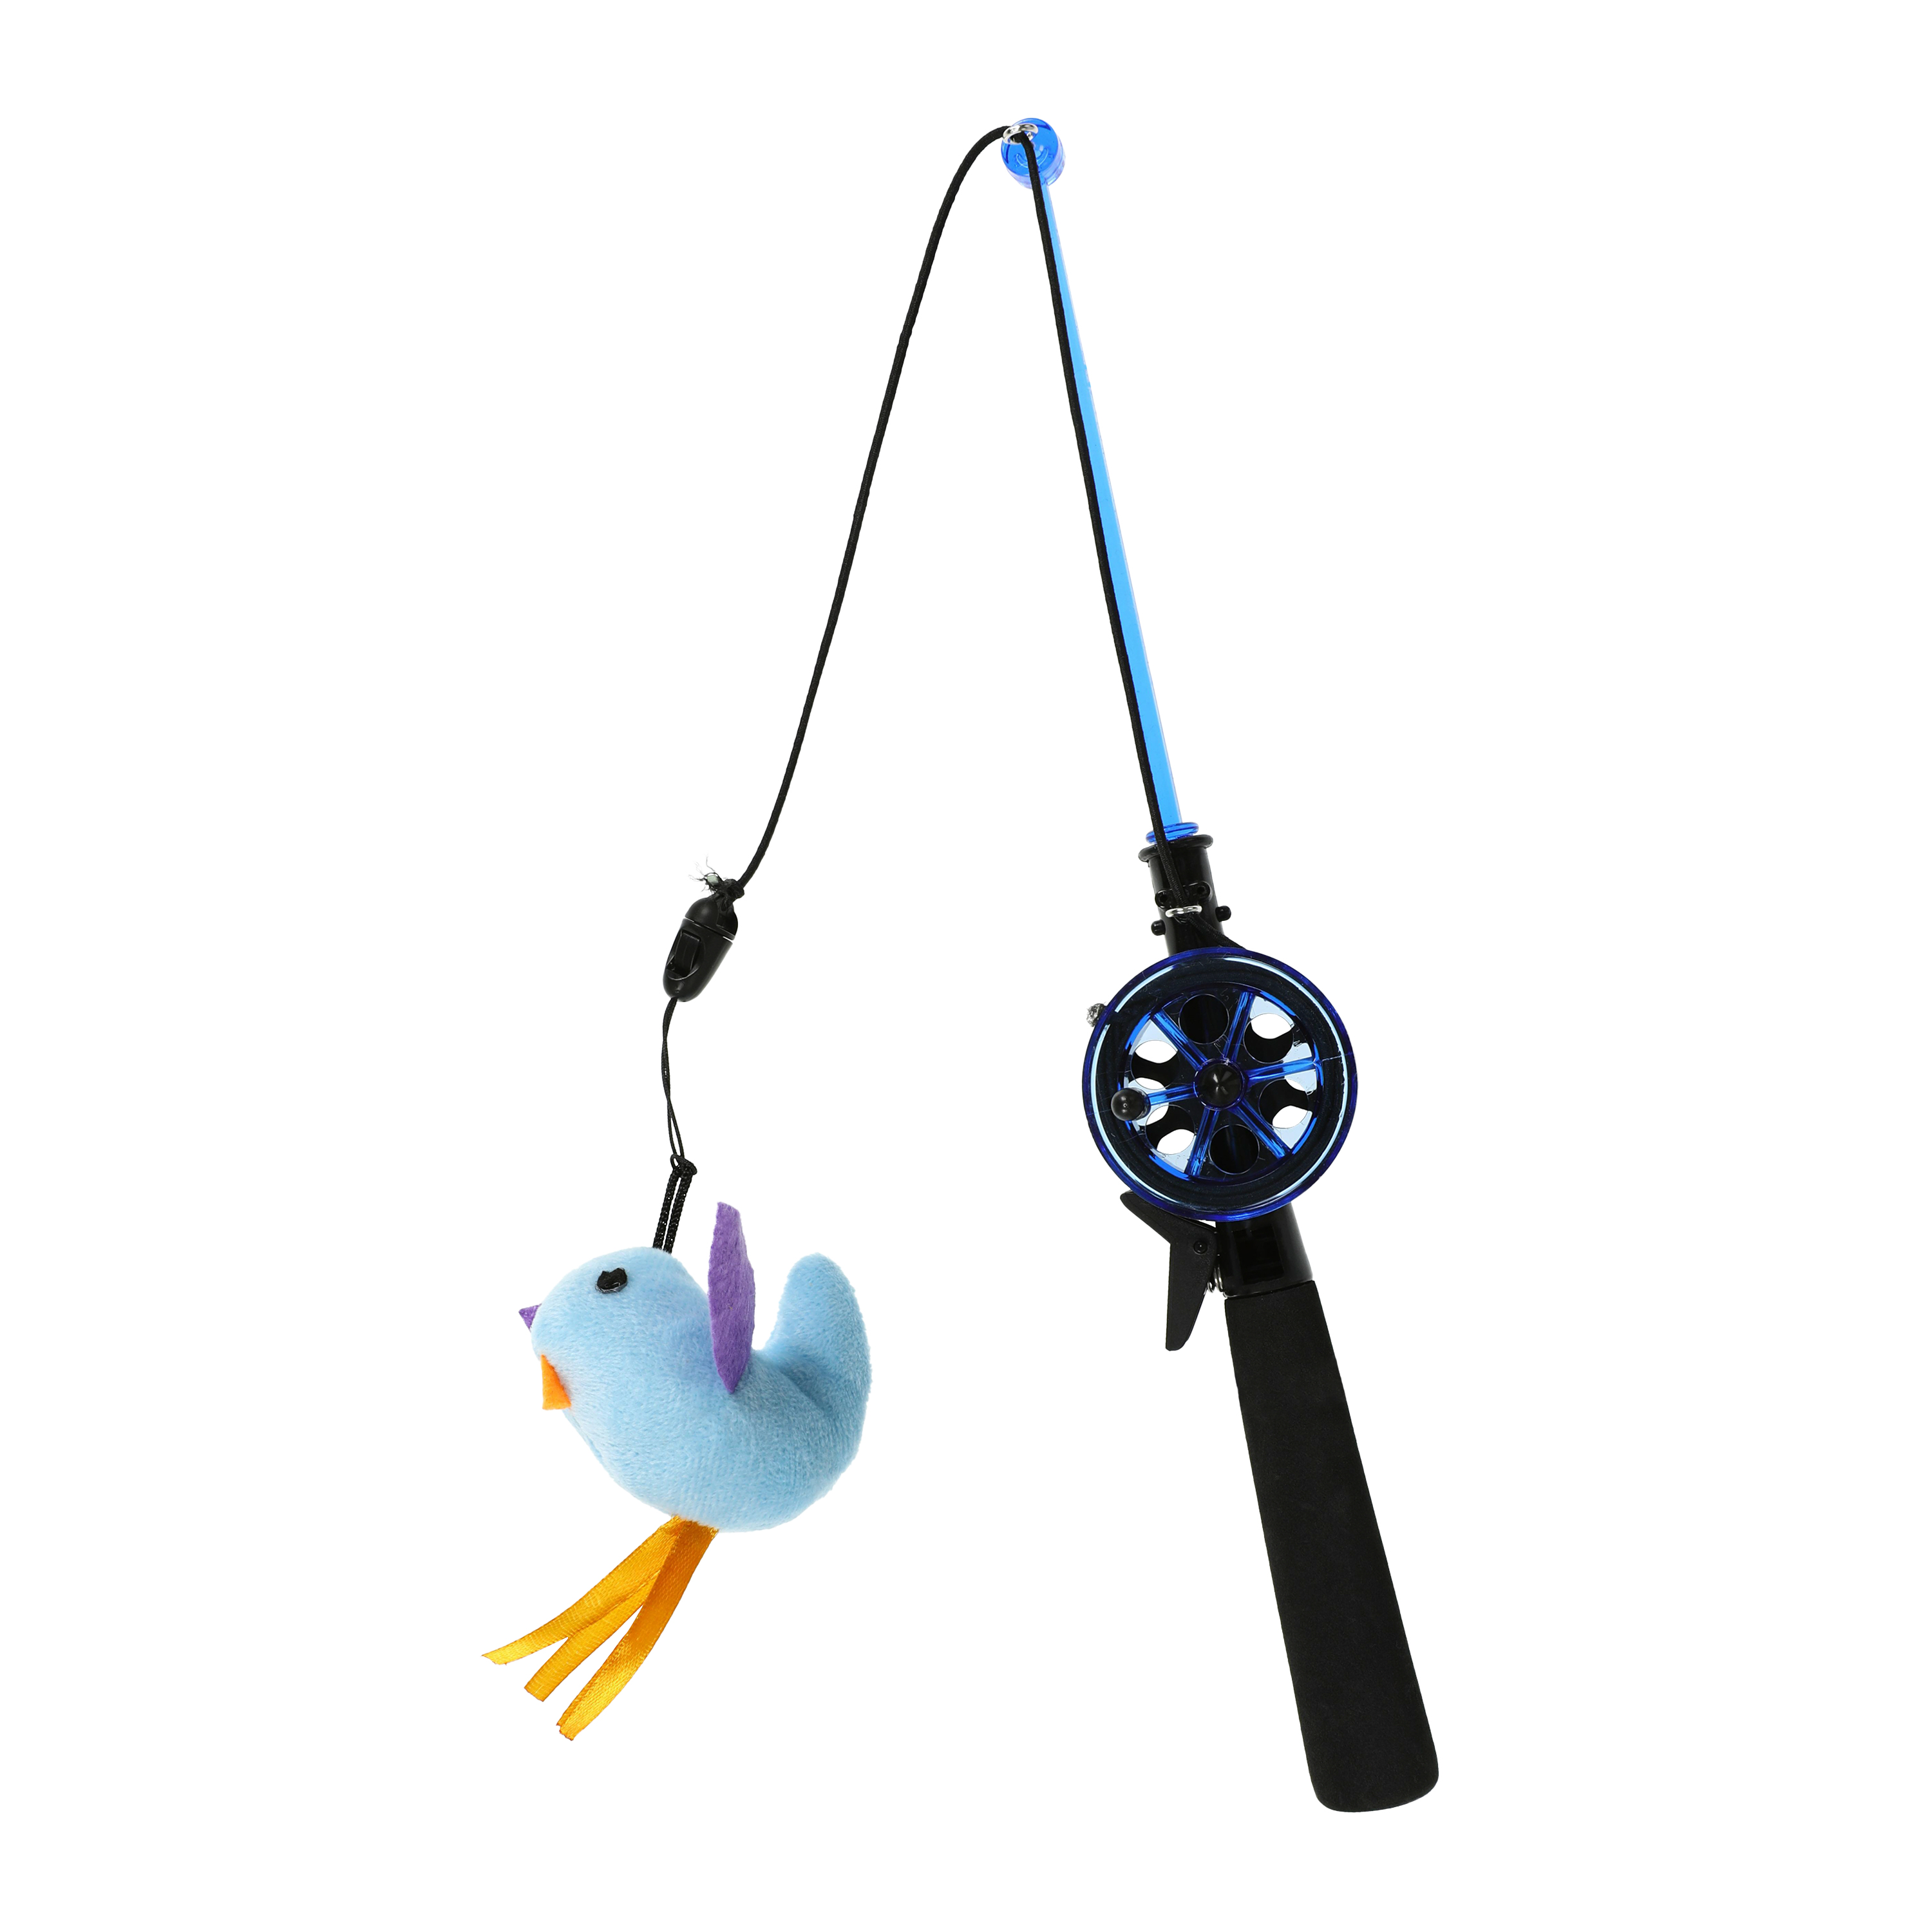  Toy Fishing Pole